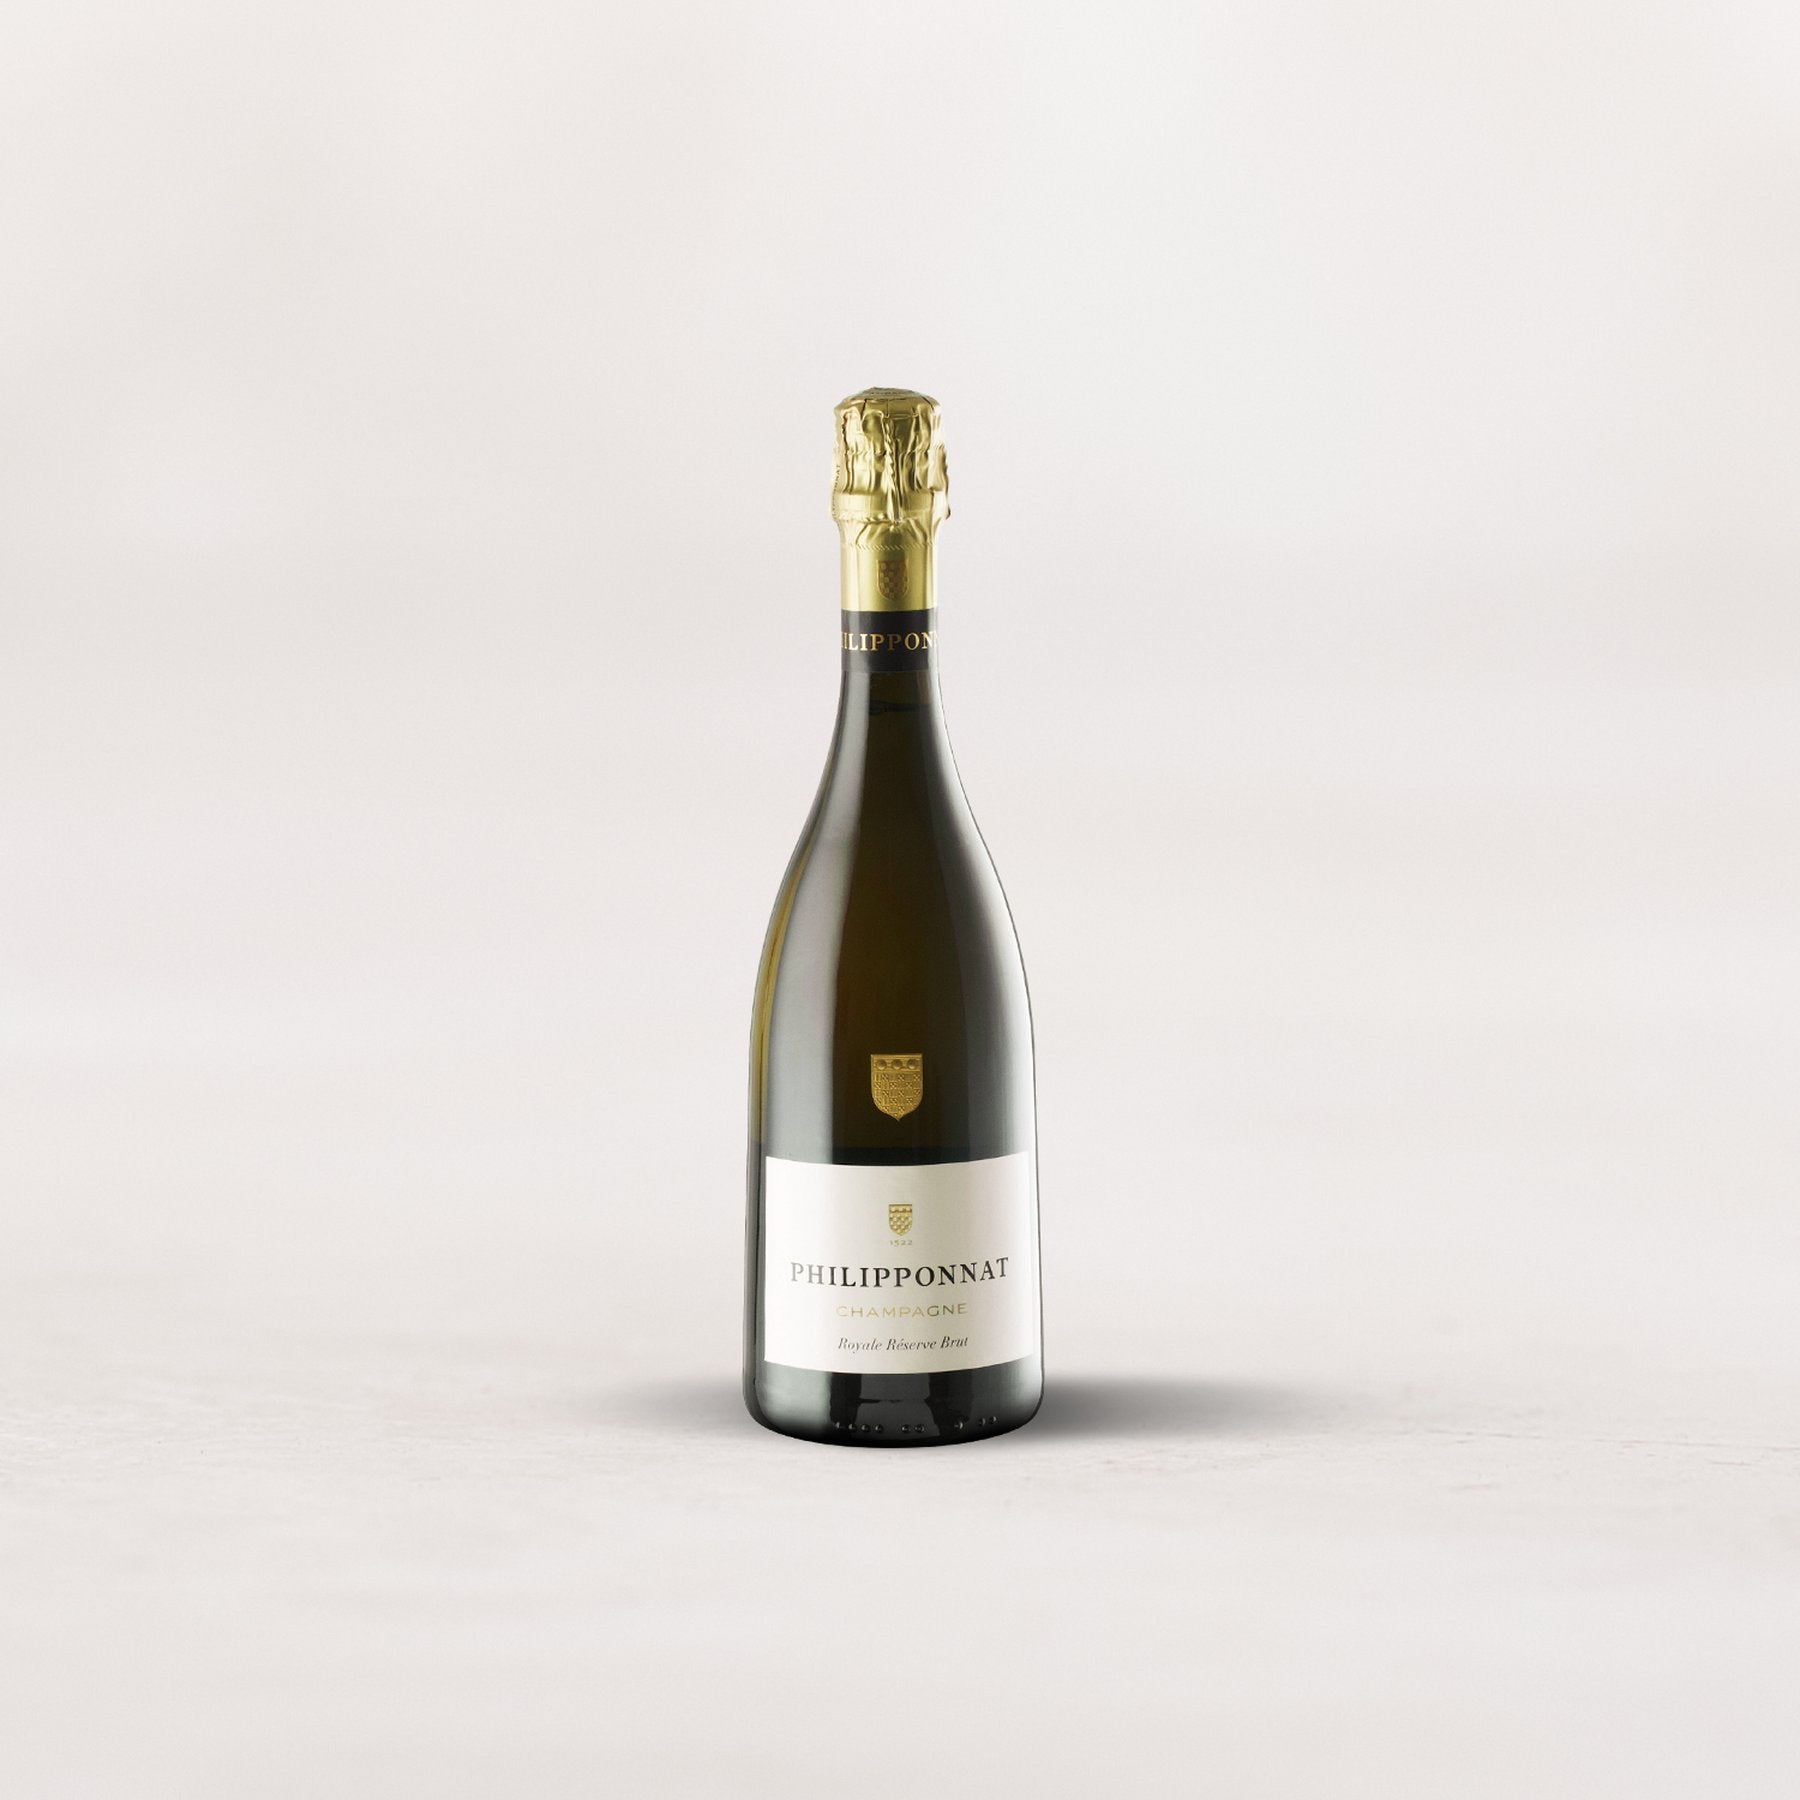 Champagne Philipponnat, “Royale Réserve” Brut